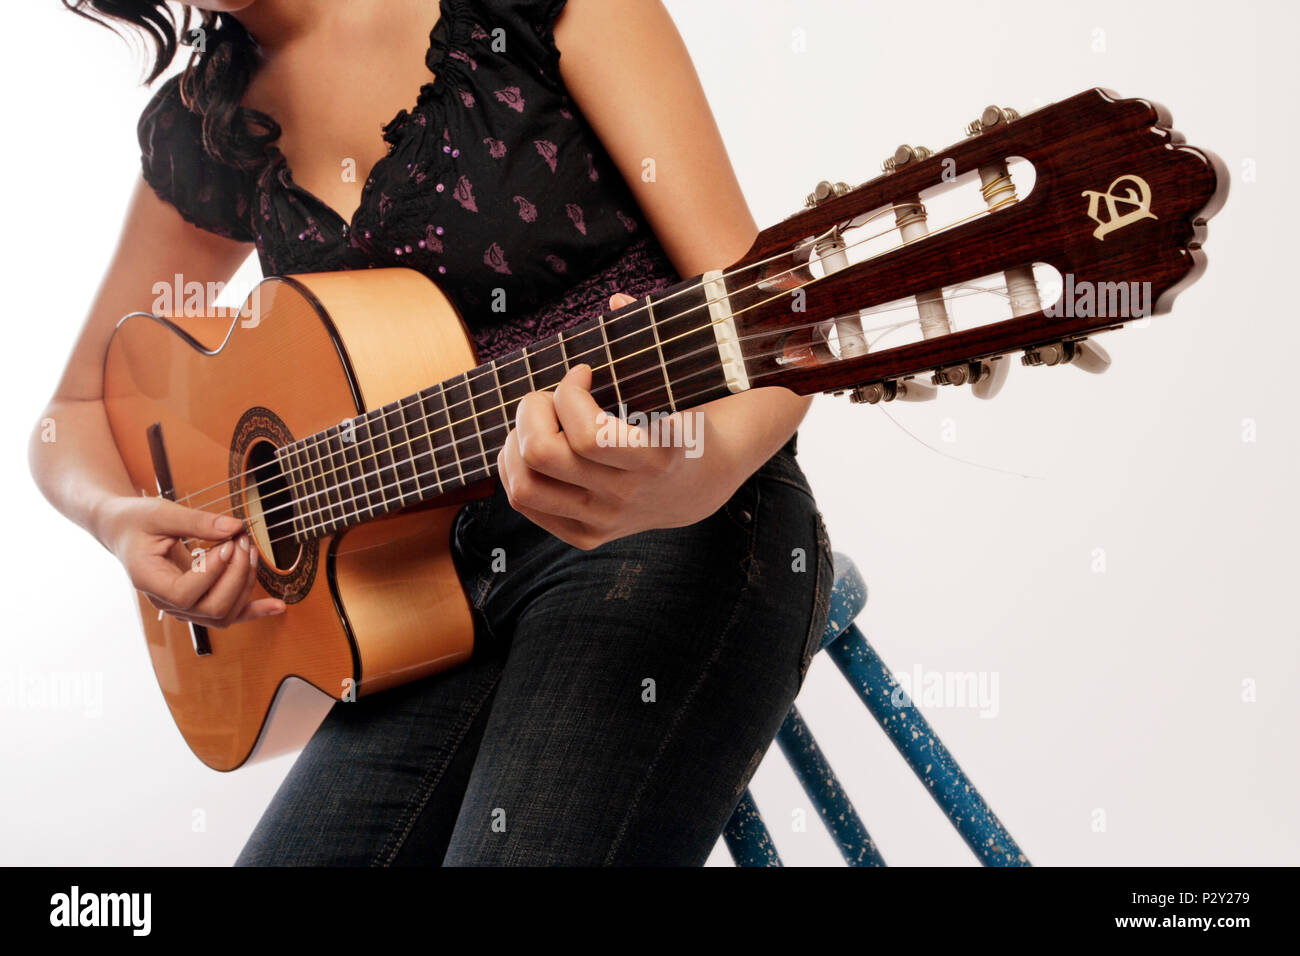 Junge Frau spielt die akustische Gitarre mit einem Plektrum Stockfotografie  - Alamy